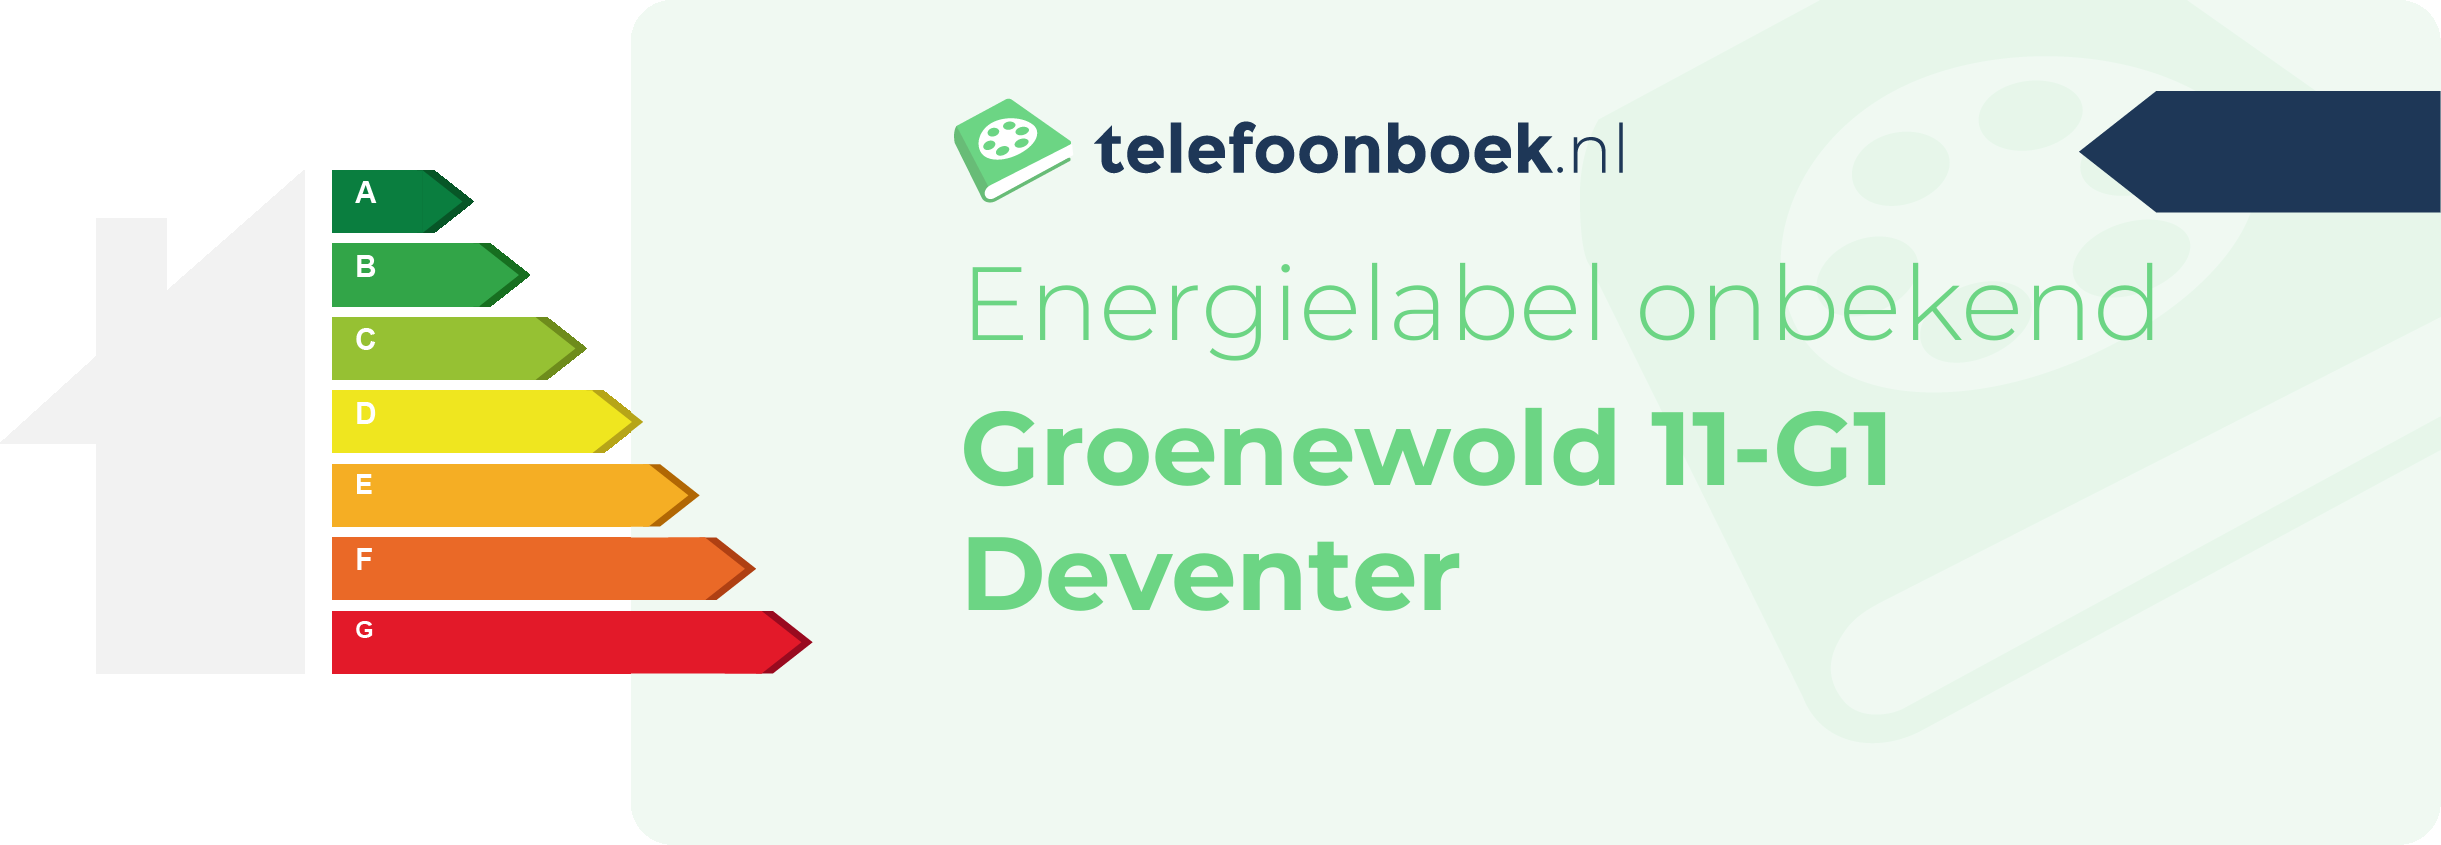 Energielabel Groenewold 11-G1 Deventer